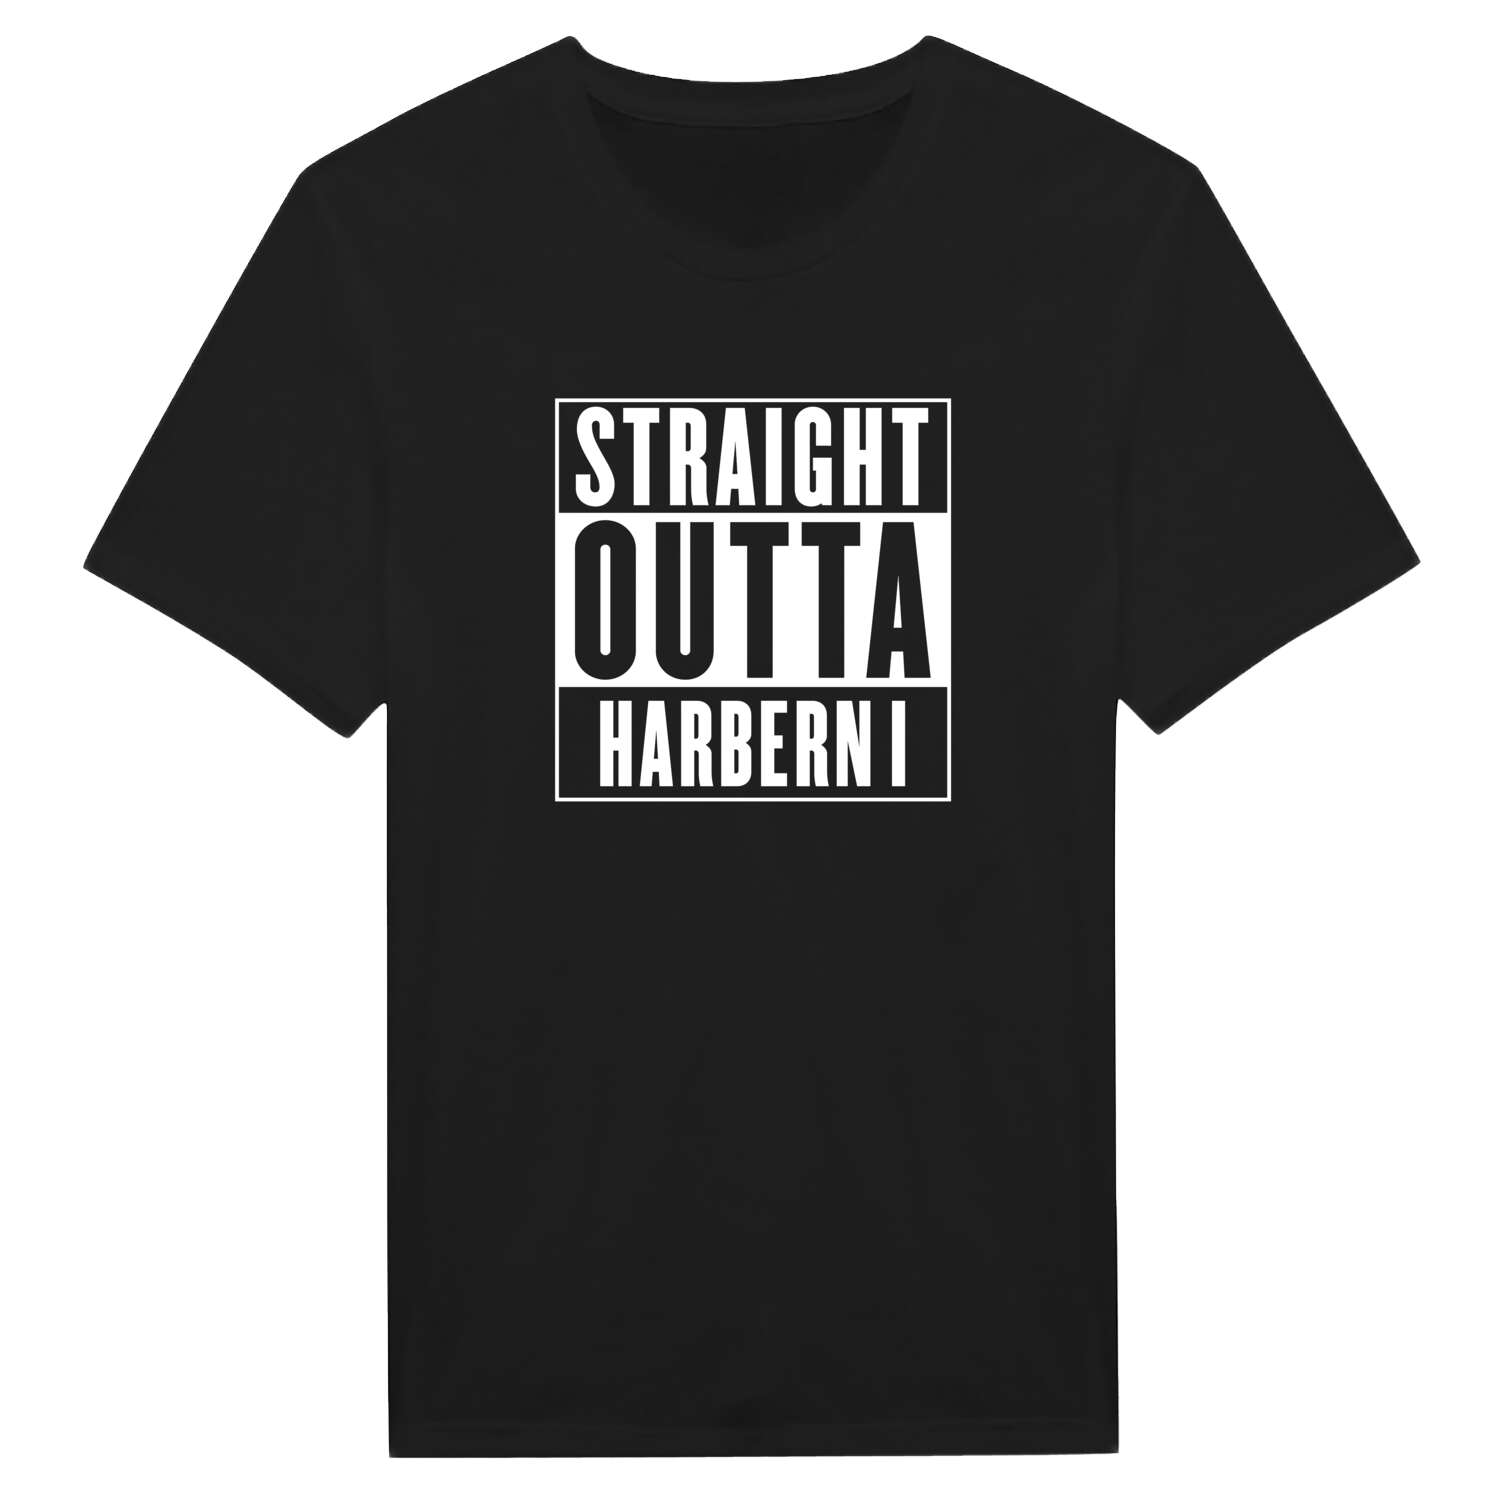 Harbern I T-Shirt »Straight Outta«